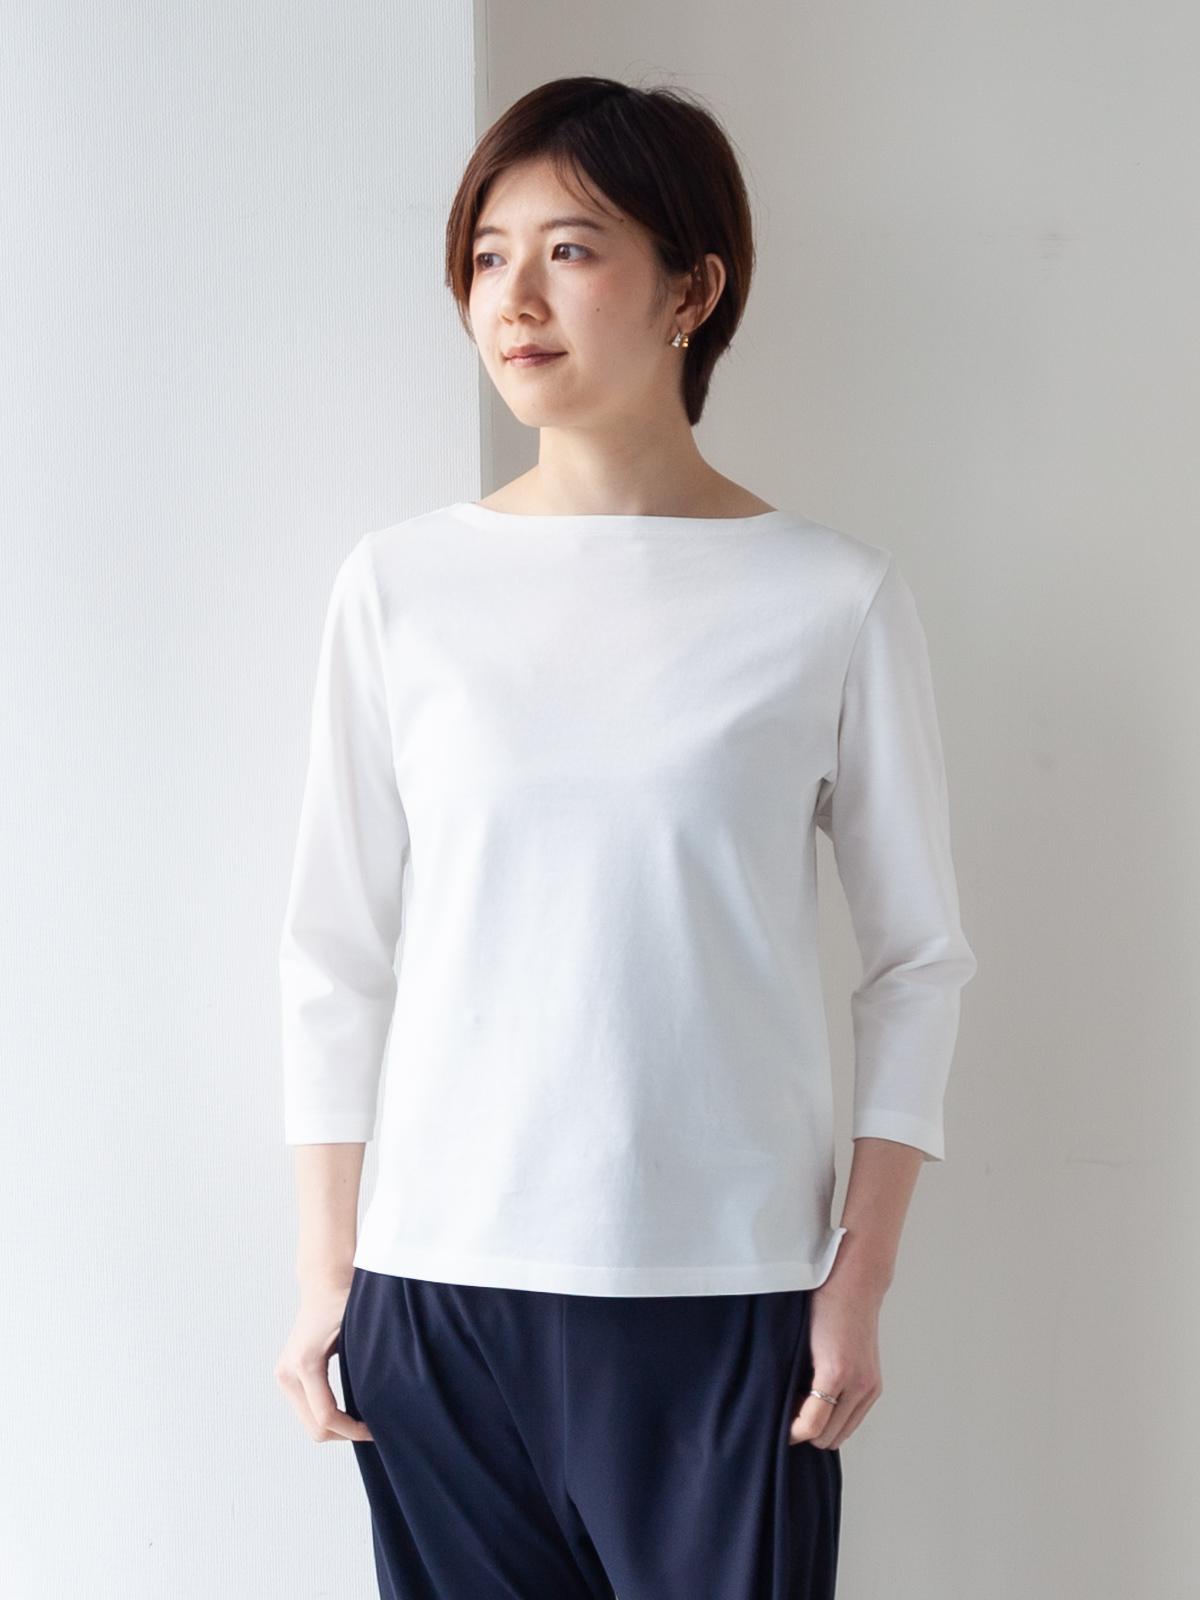 上質コットン100%のドレスTシャツ/ボートネック七分袖/ホワイト